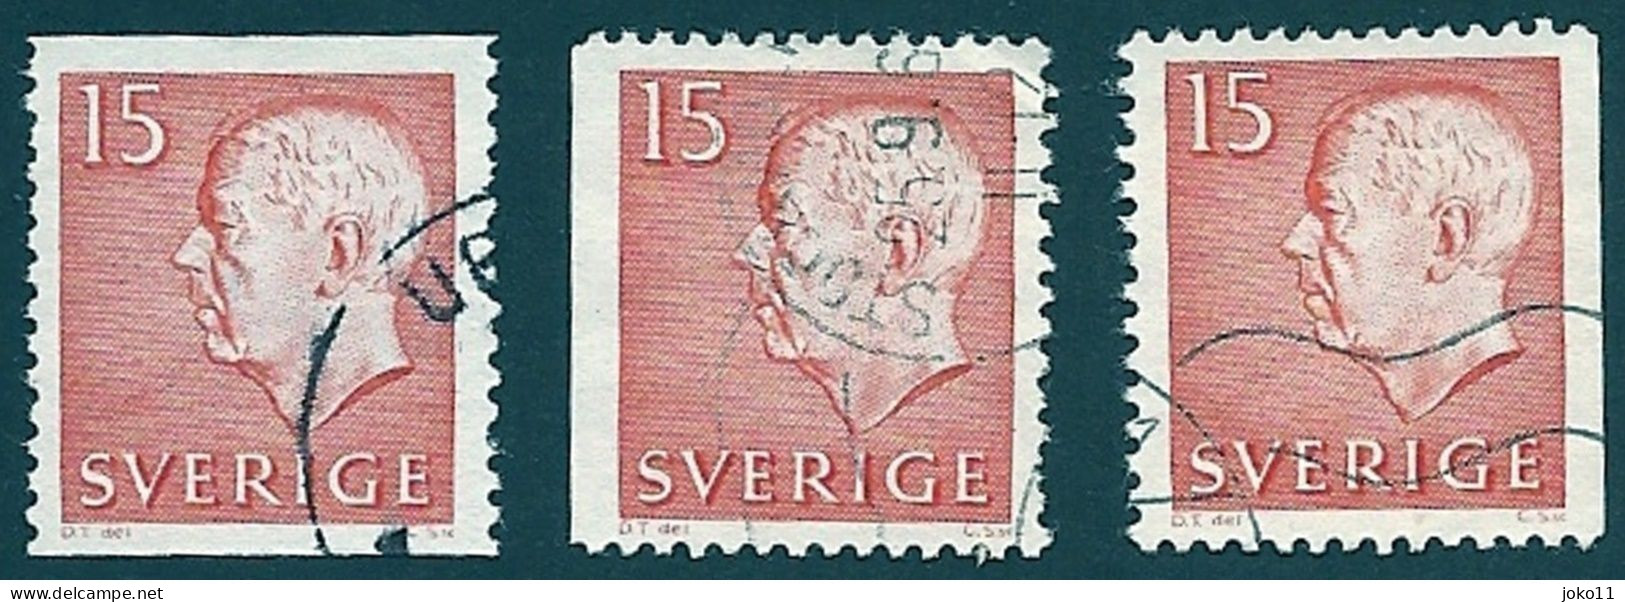 Schweden, 1961, Michel-Nr. 468 A+Dl+Dr, Gestempelt - Used Stamps